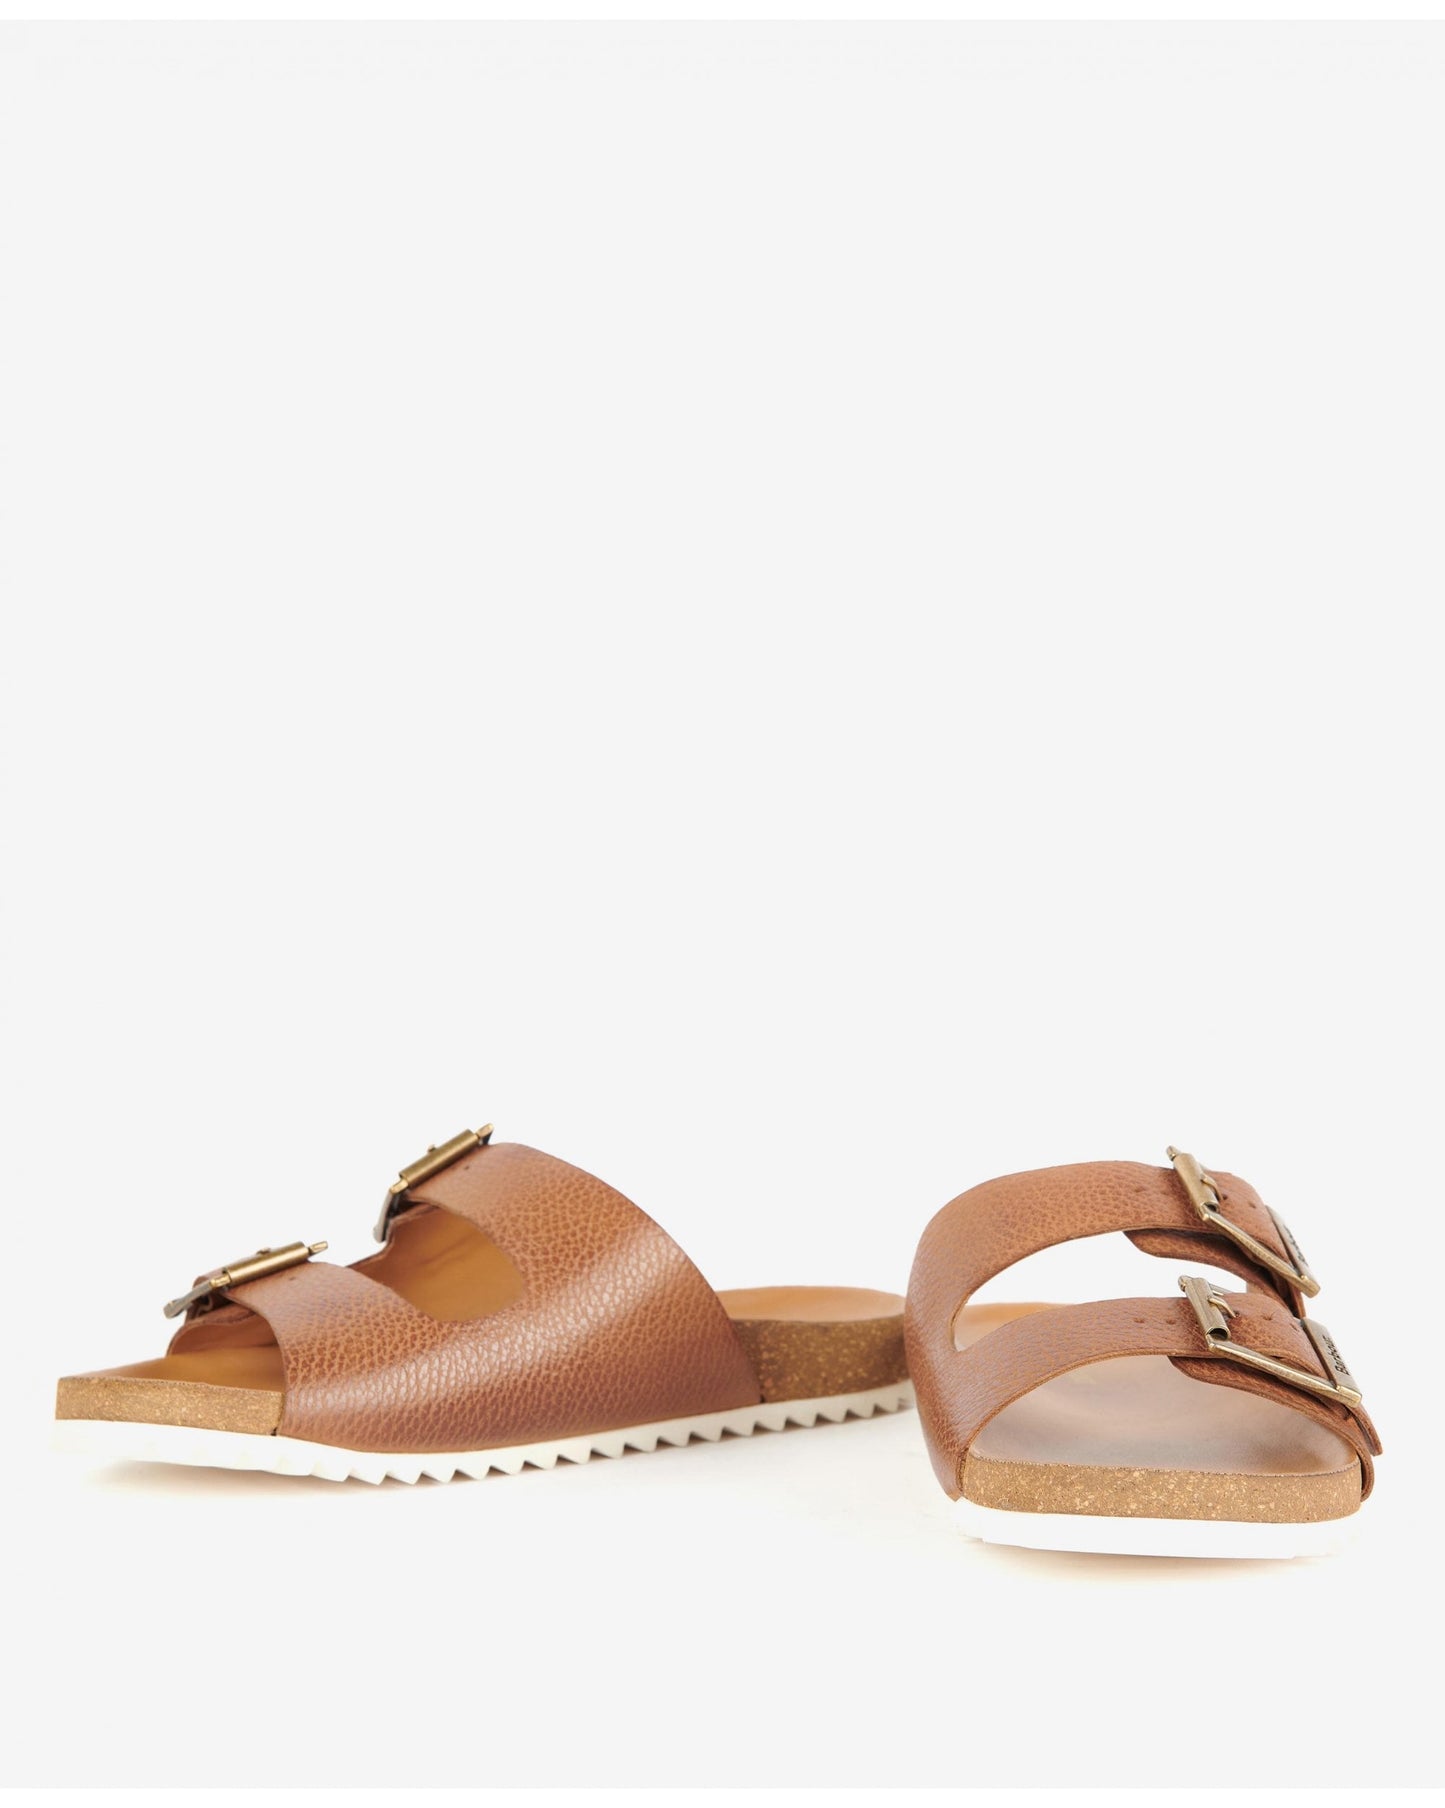 Allegra Two Strap Sandals